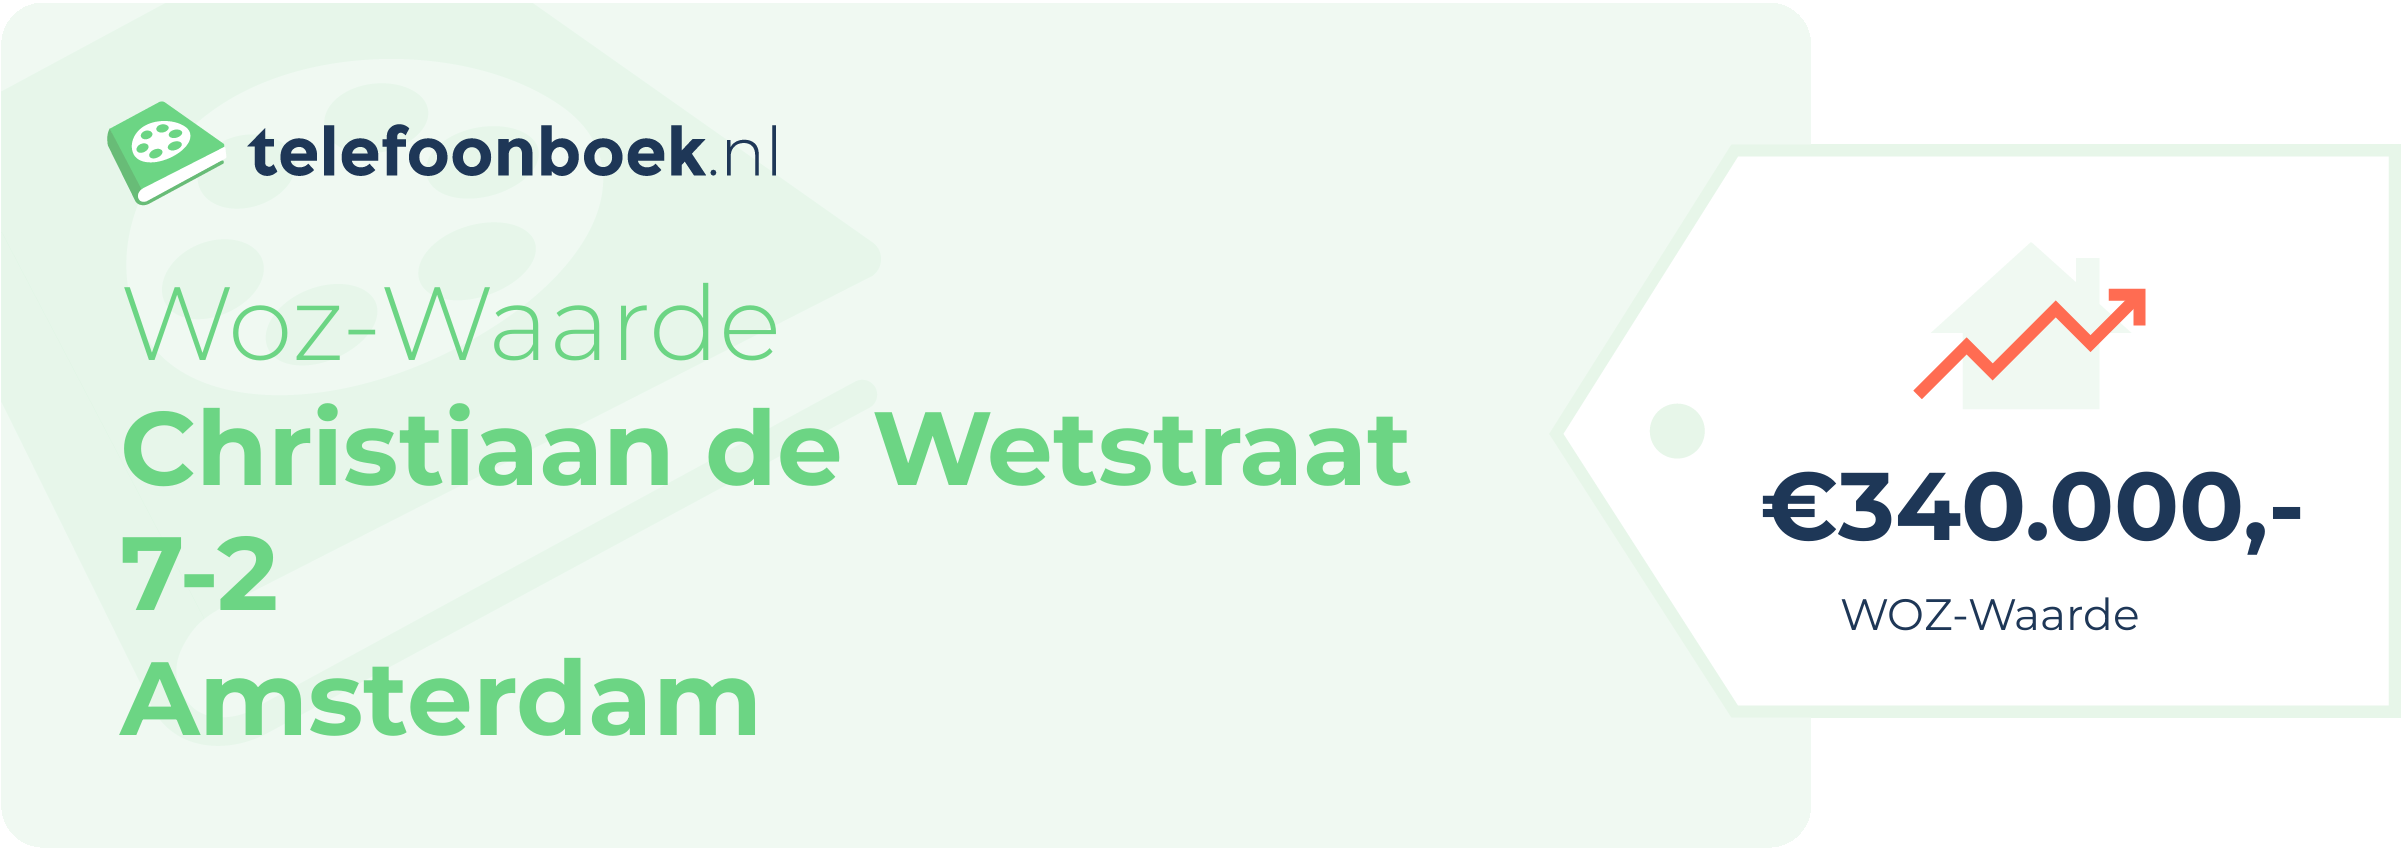 WOZ-waarde Christiaan De Wetstraat 7-2 Amsterdam